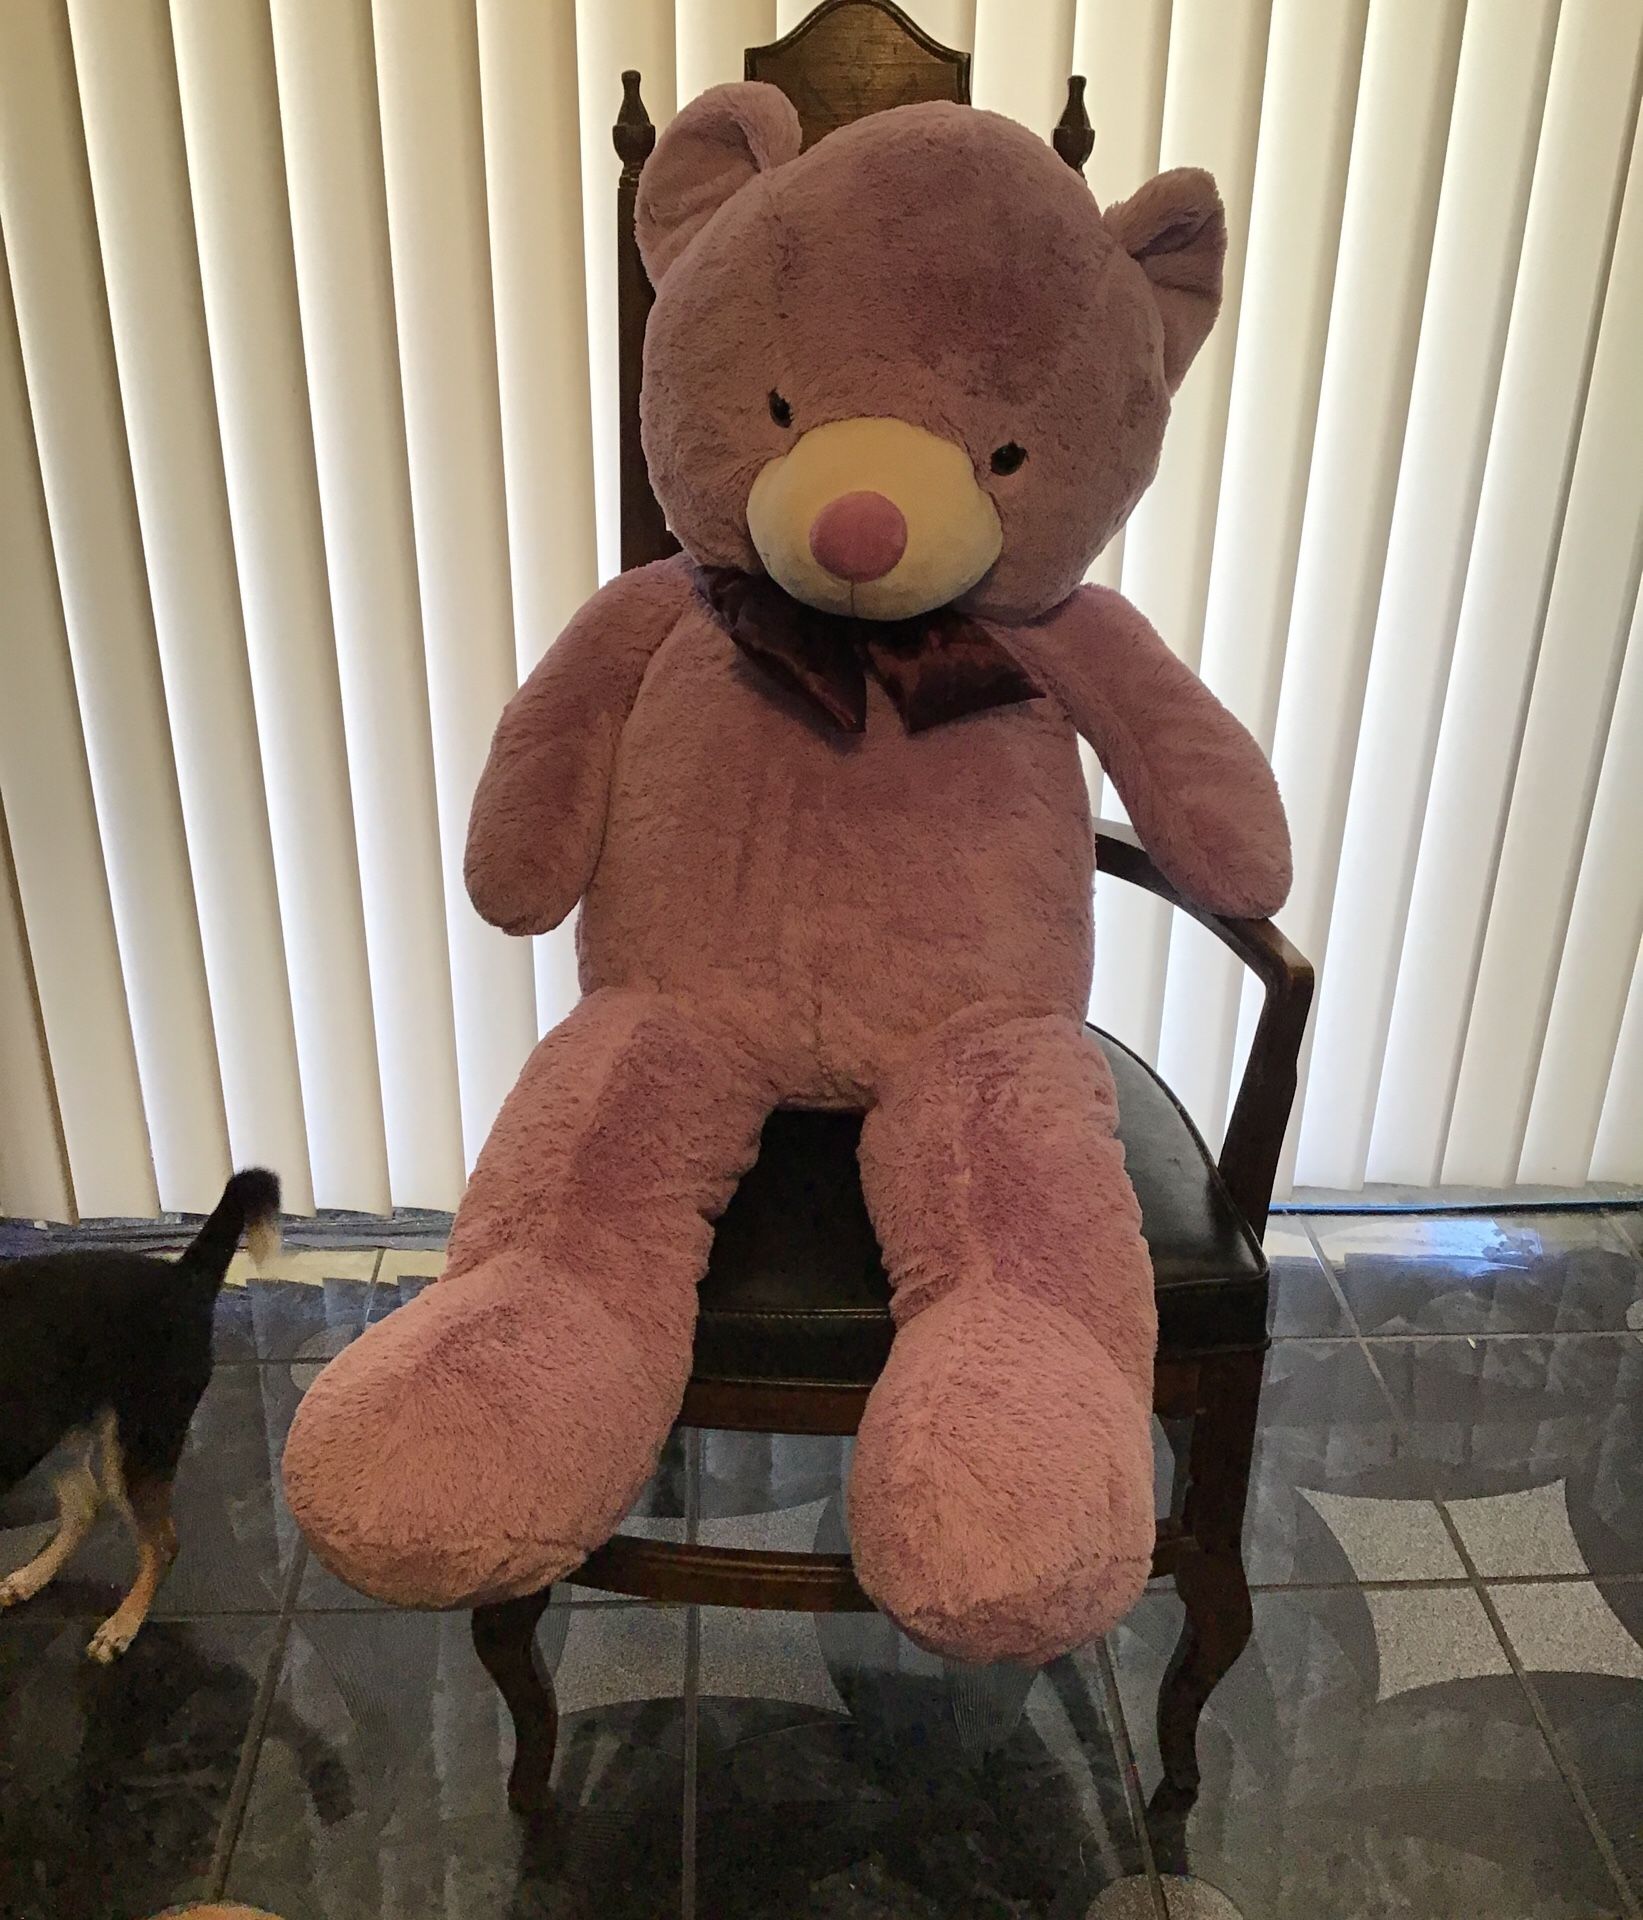 4foot tall big purple stuffed teddy bear